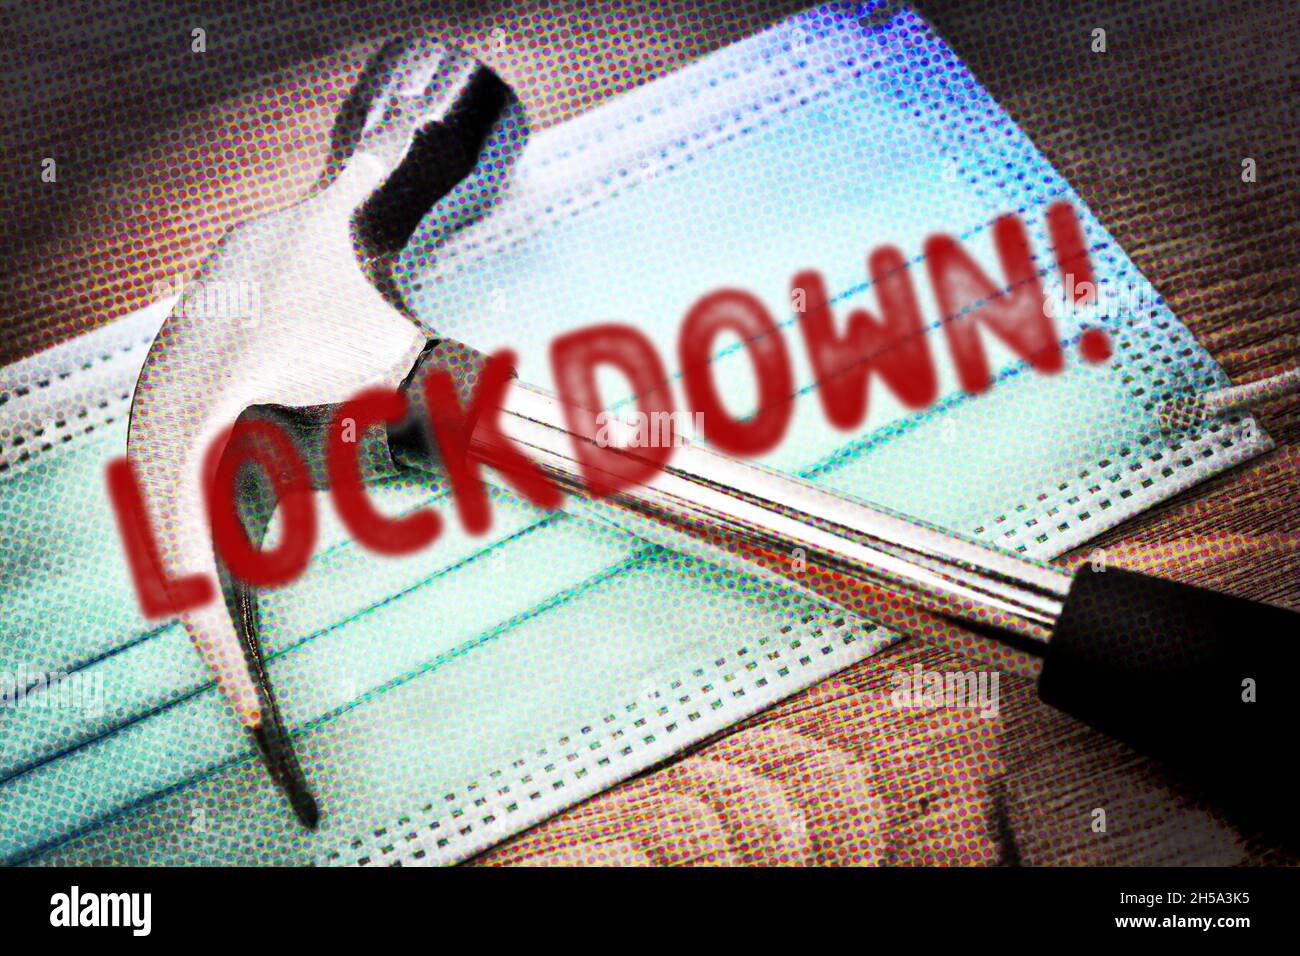 FOTOMONTAGE, Hammer auf Schutzmaske und Schriftzug Lockdown, Symbolfoto harter Lockdown Foto de stock